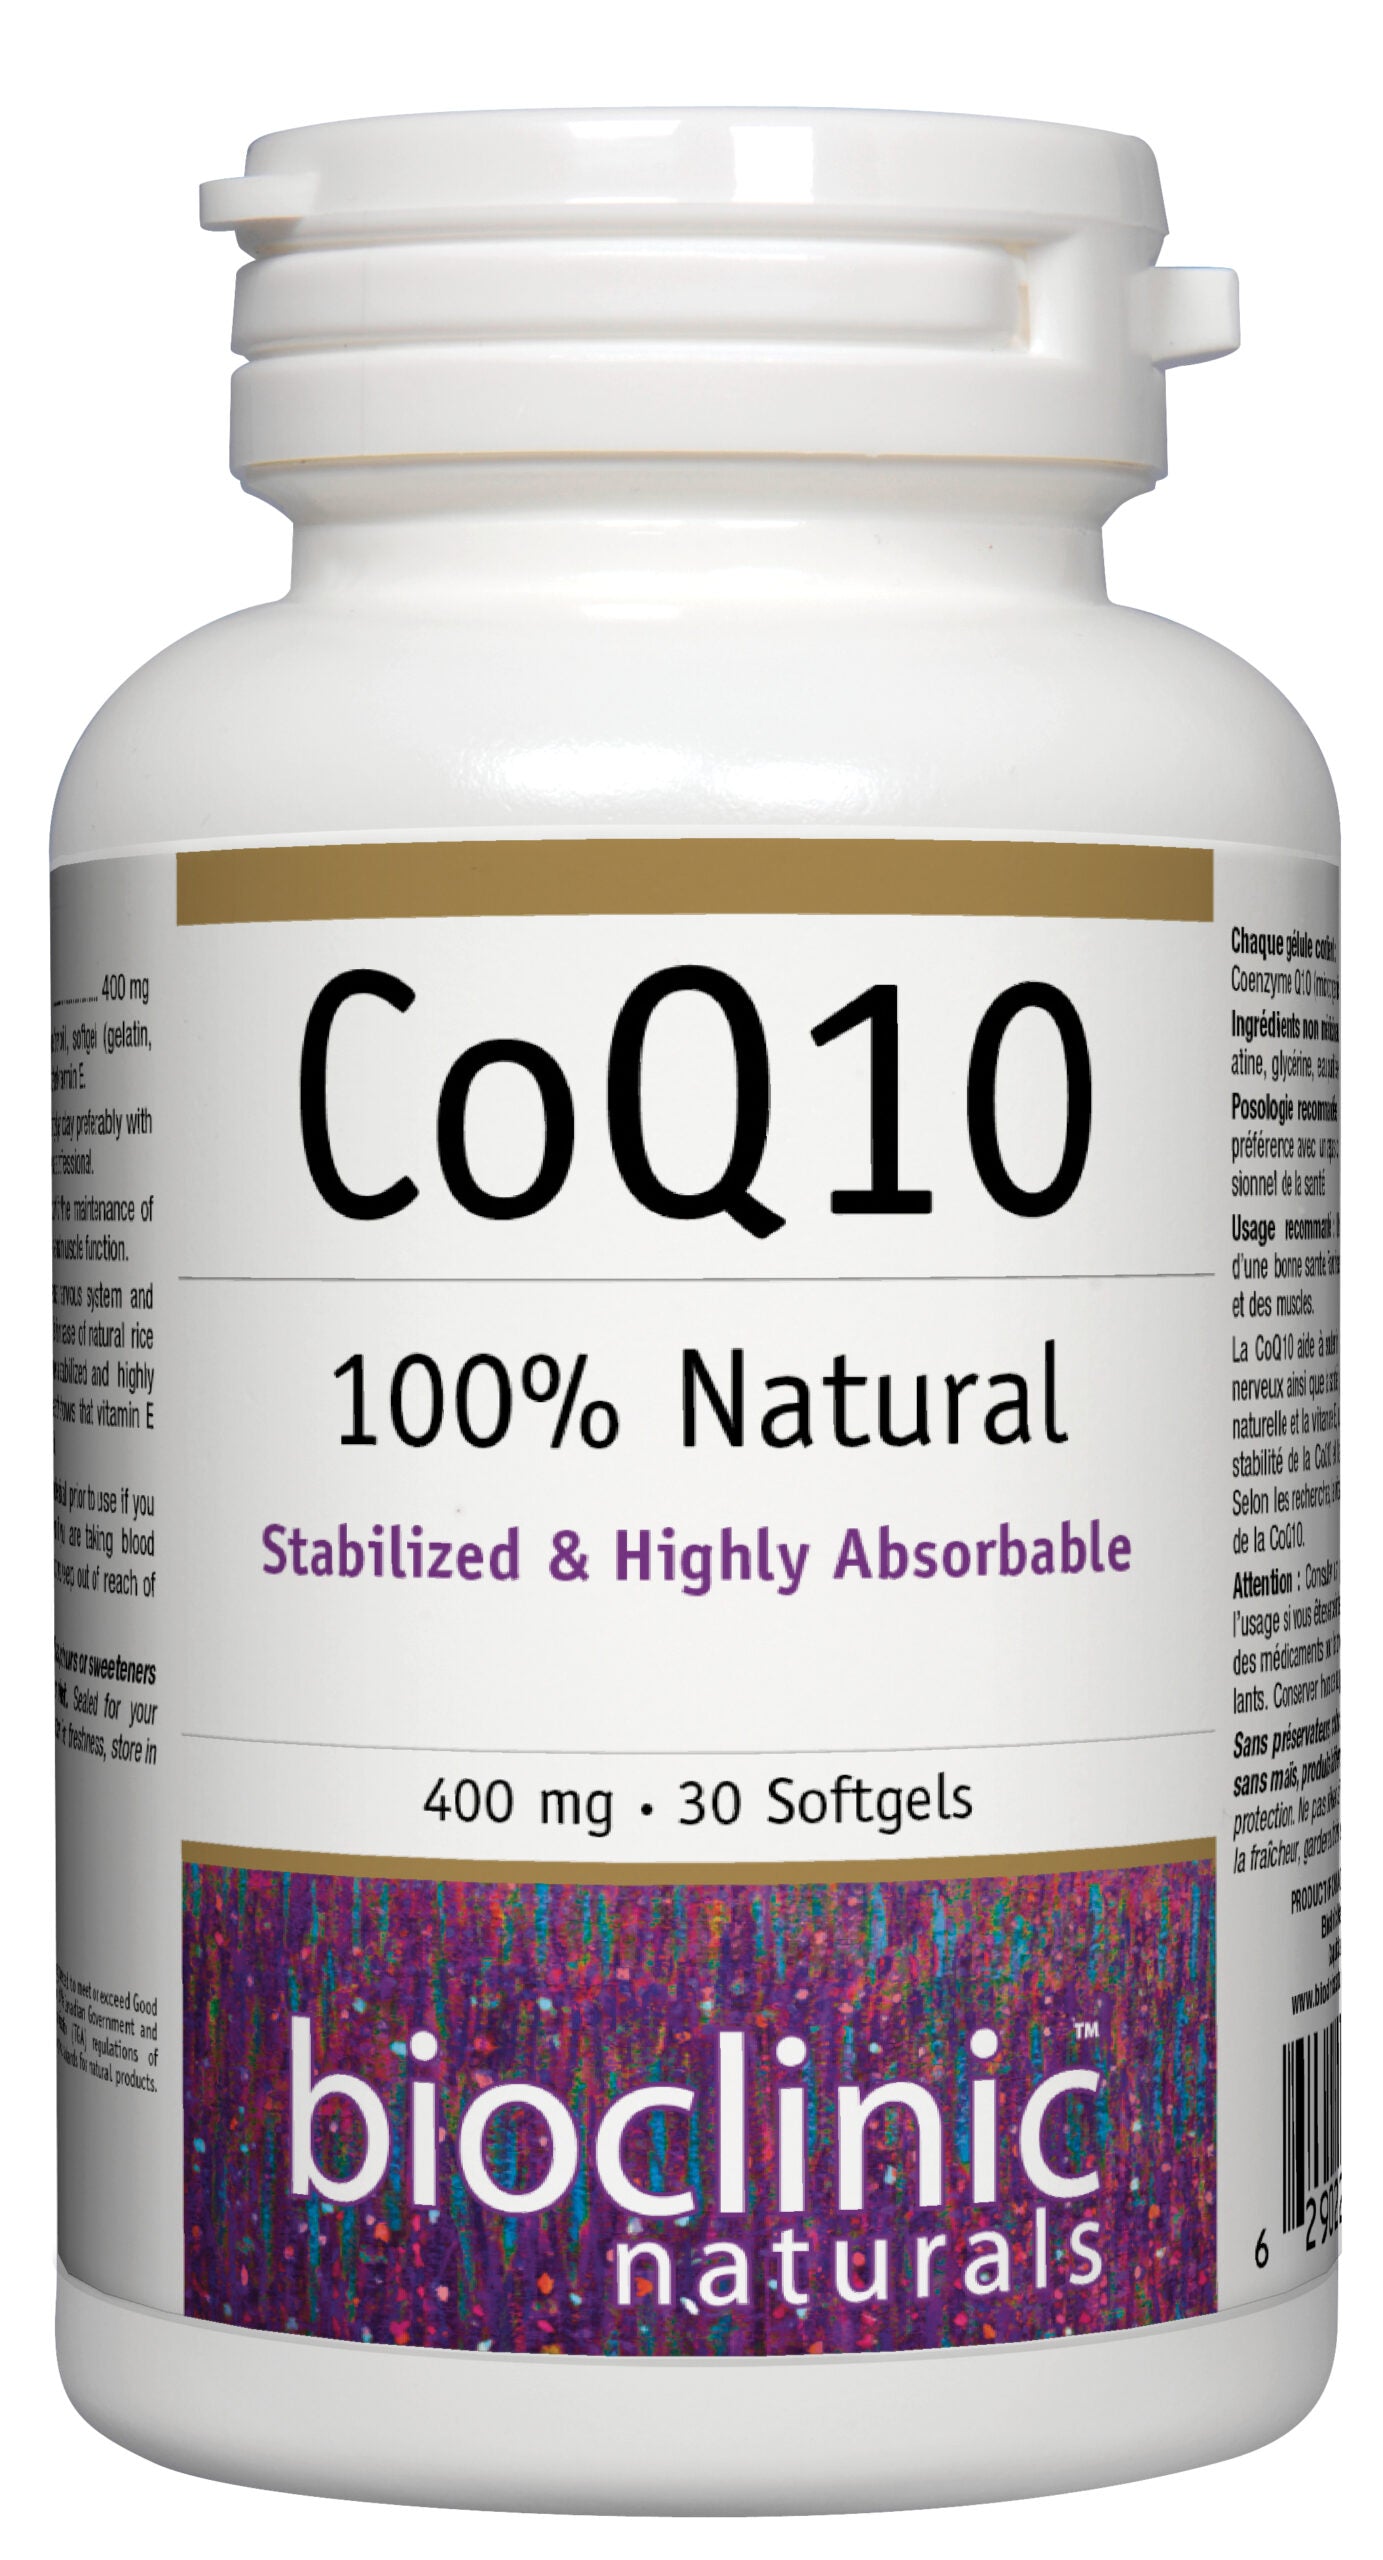 COQ10 400MG 30 SOFT GEL - BIOCLINIC